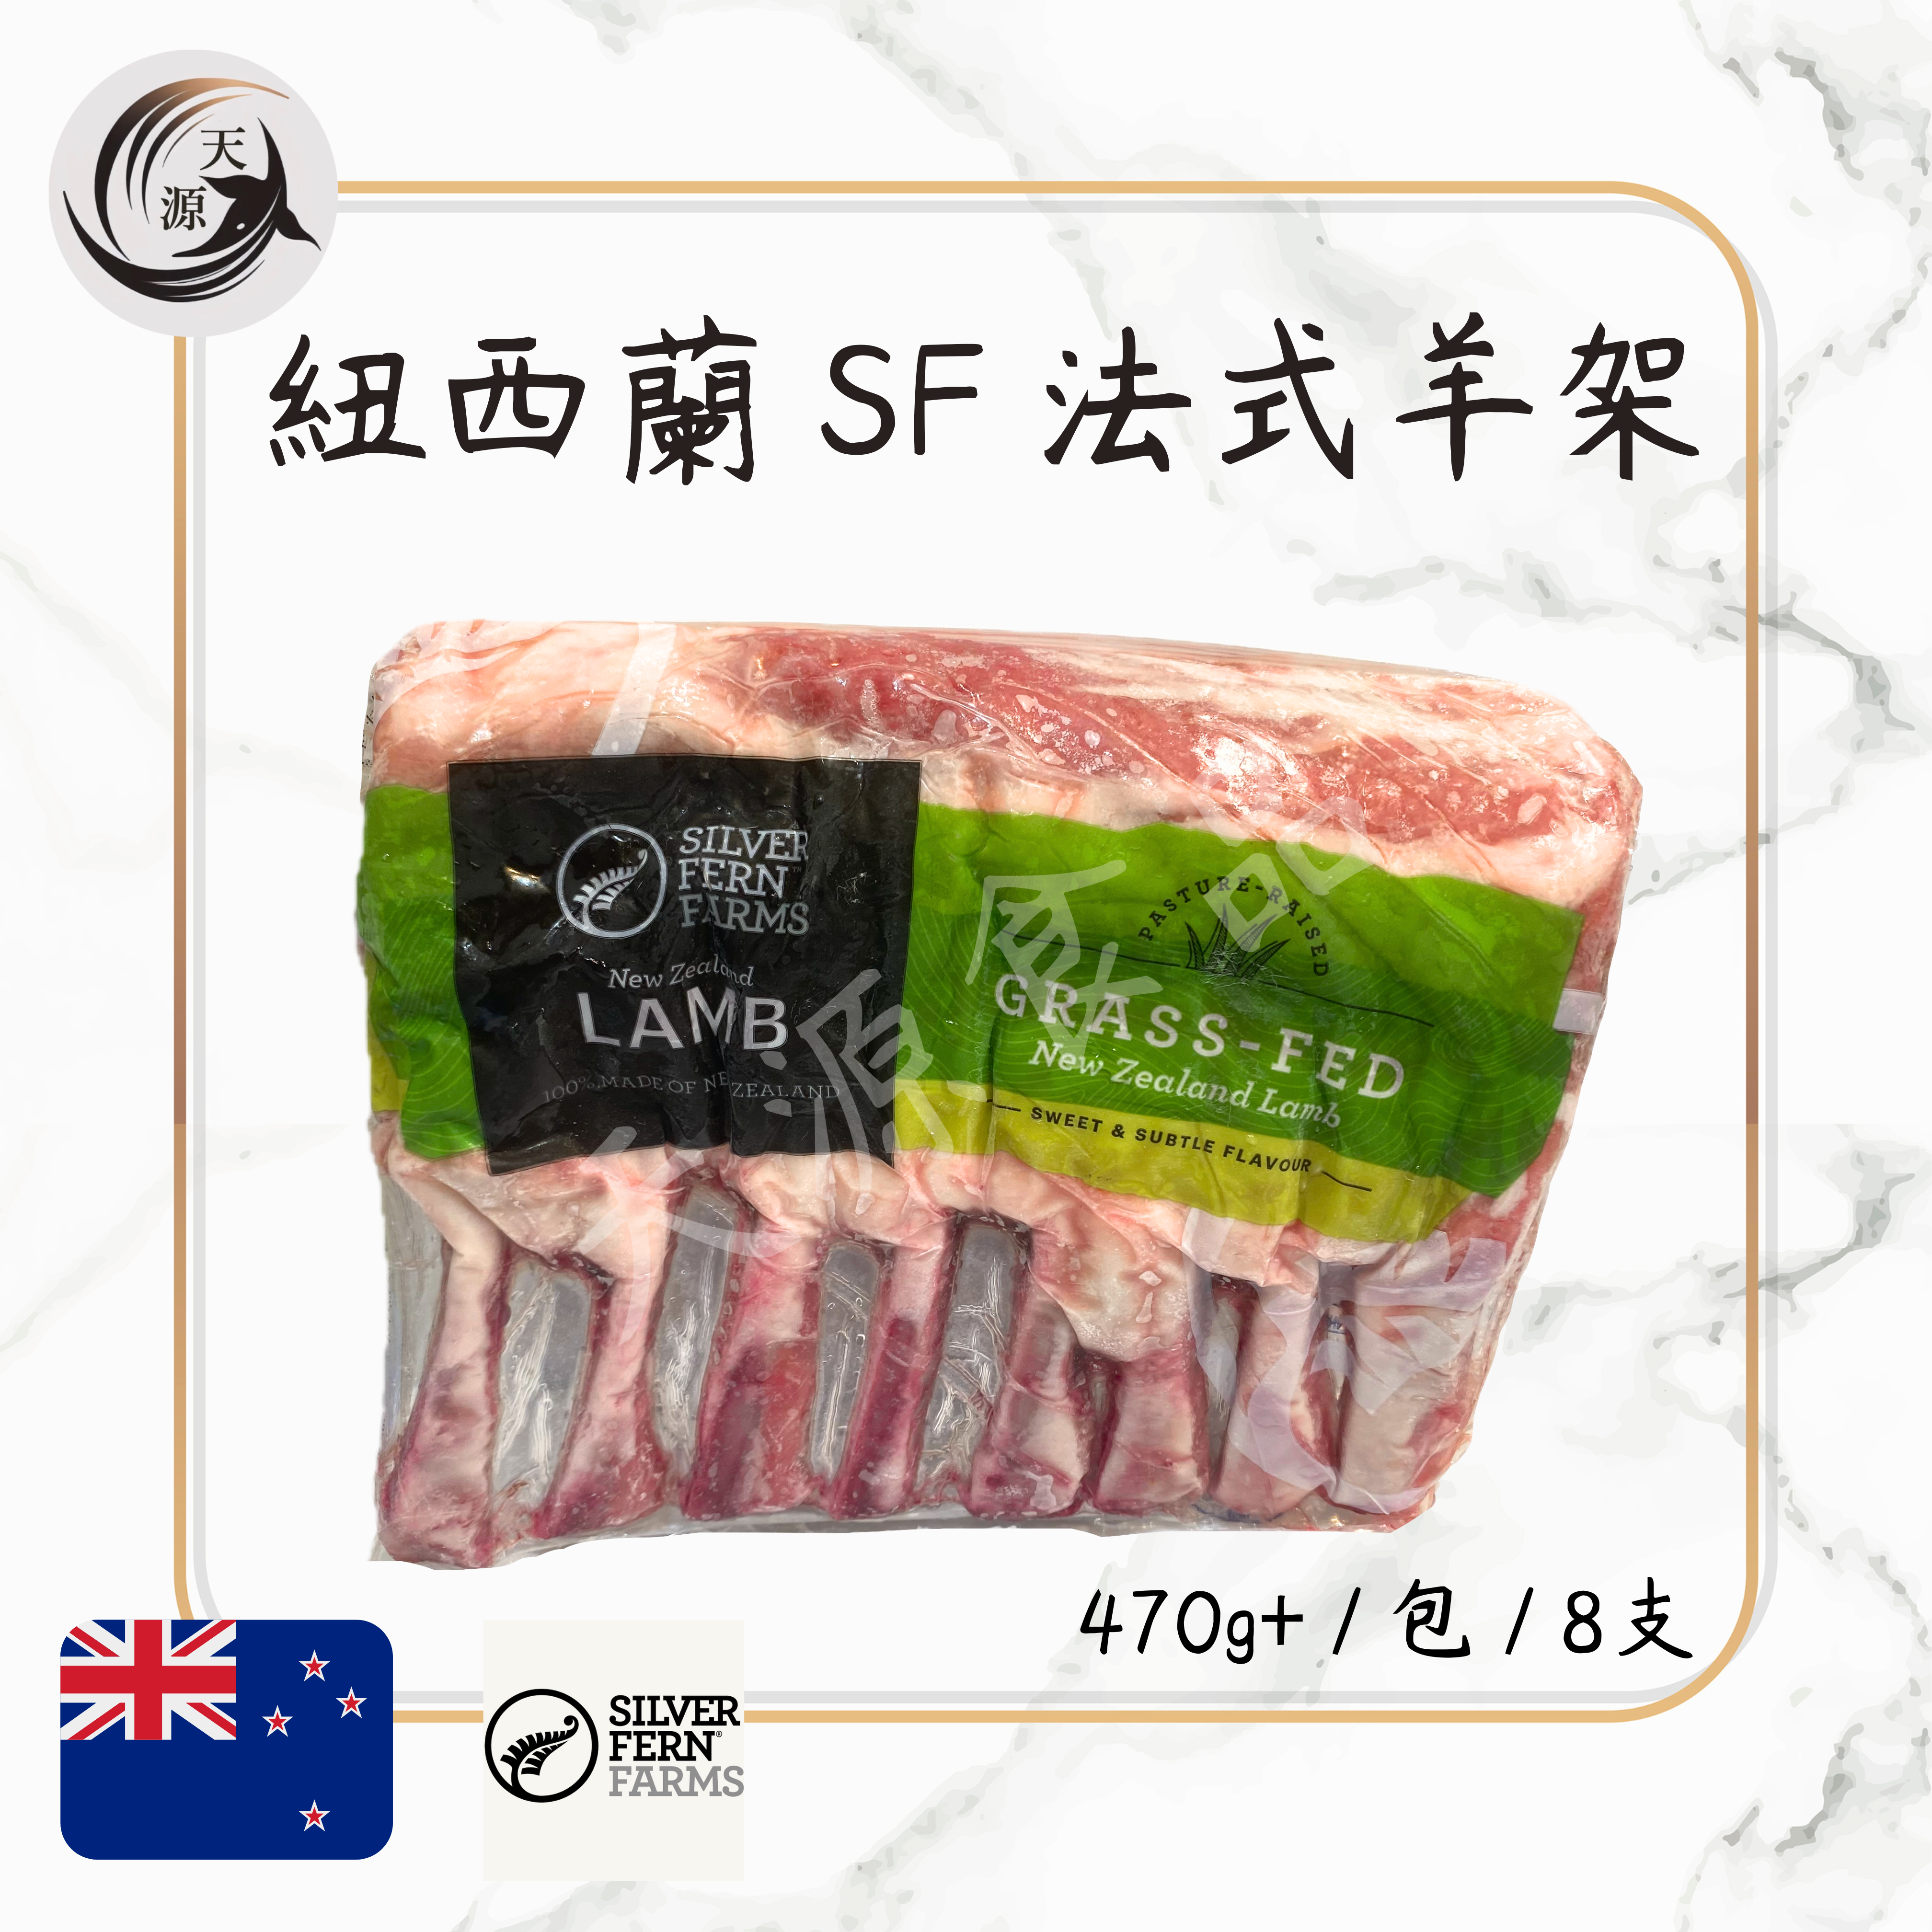 紐西蘭Silver Fern Farm羊架 470g+